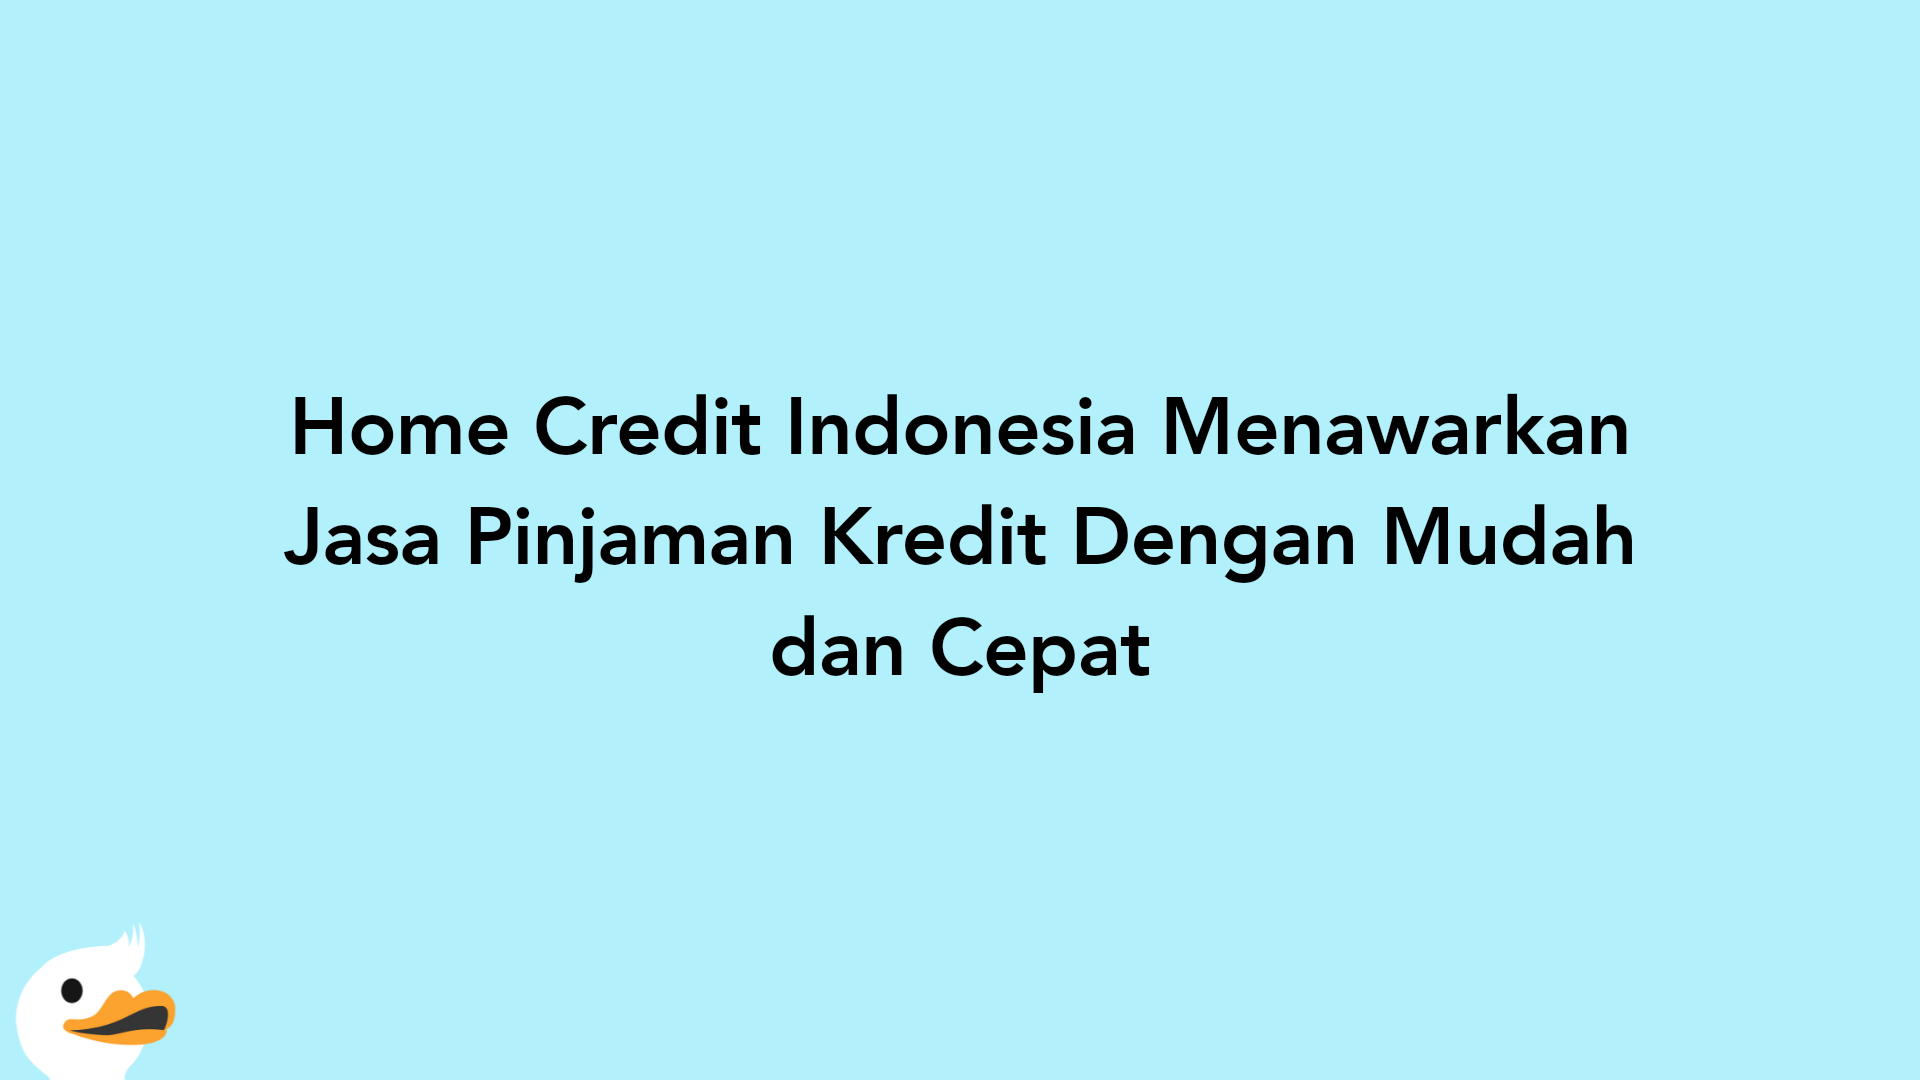 Home Credit Indonesia Menawarkan Jasa Pinjaman Kredit Dengan Mudah dan Cepat